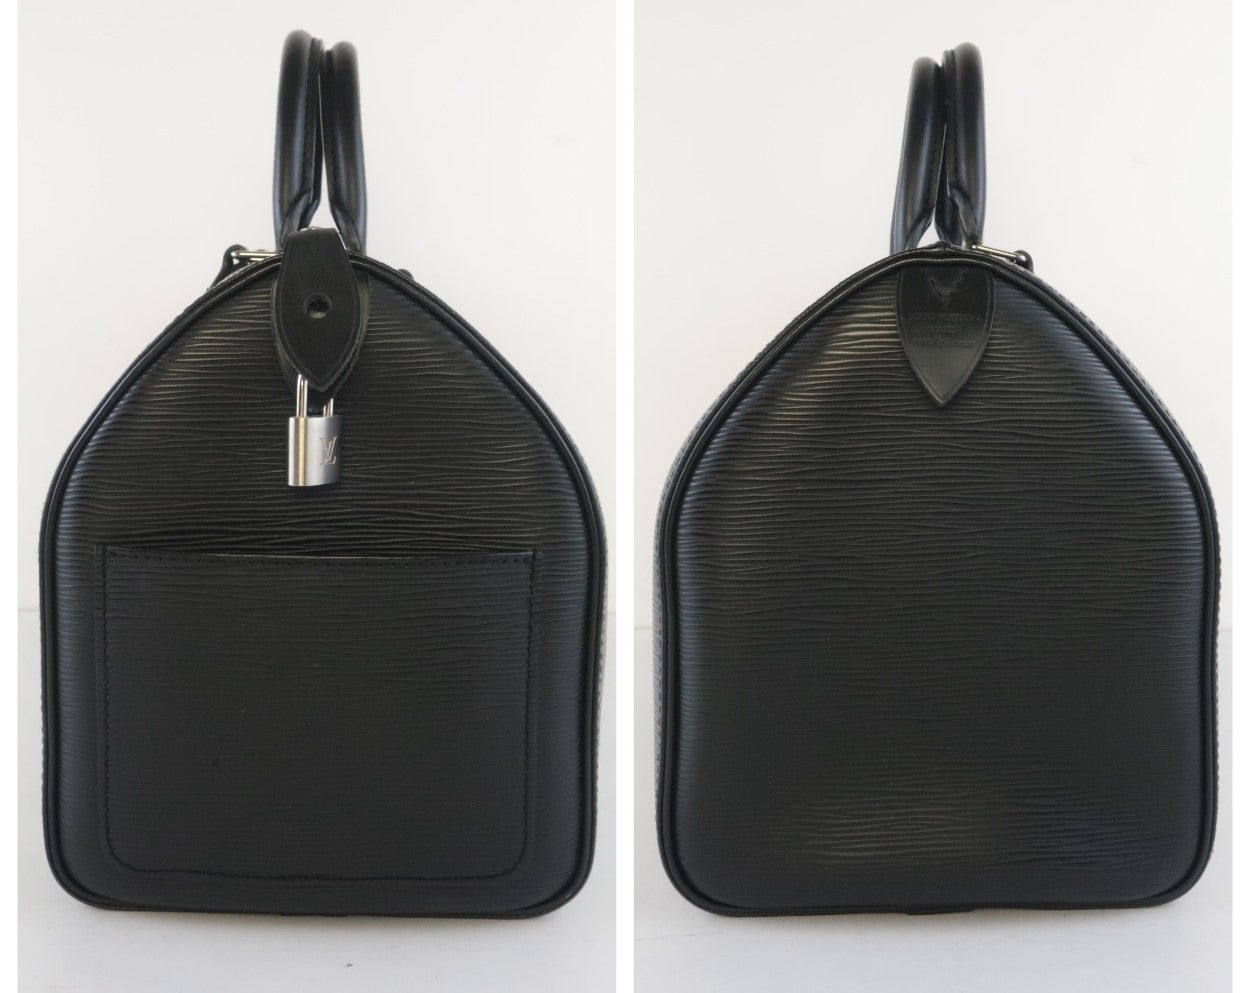 Louis Vuitton Black Epi Leather Speedy 35 Bag - Yoogi's Closet